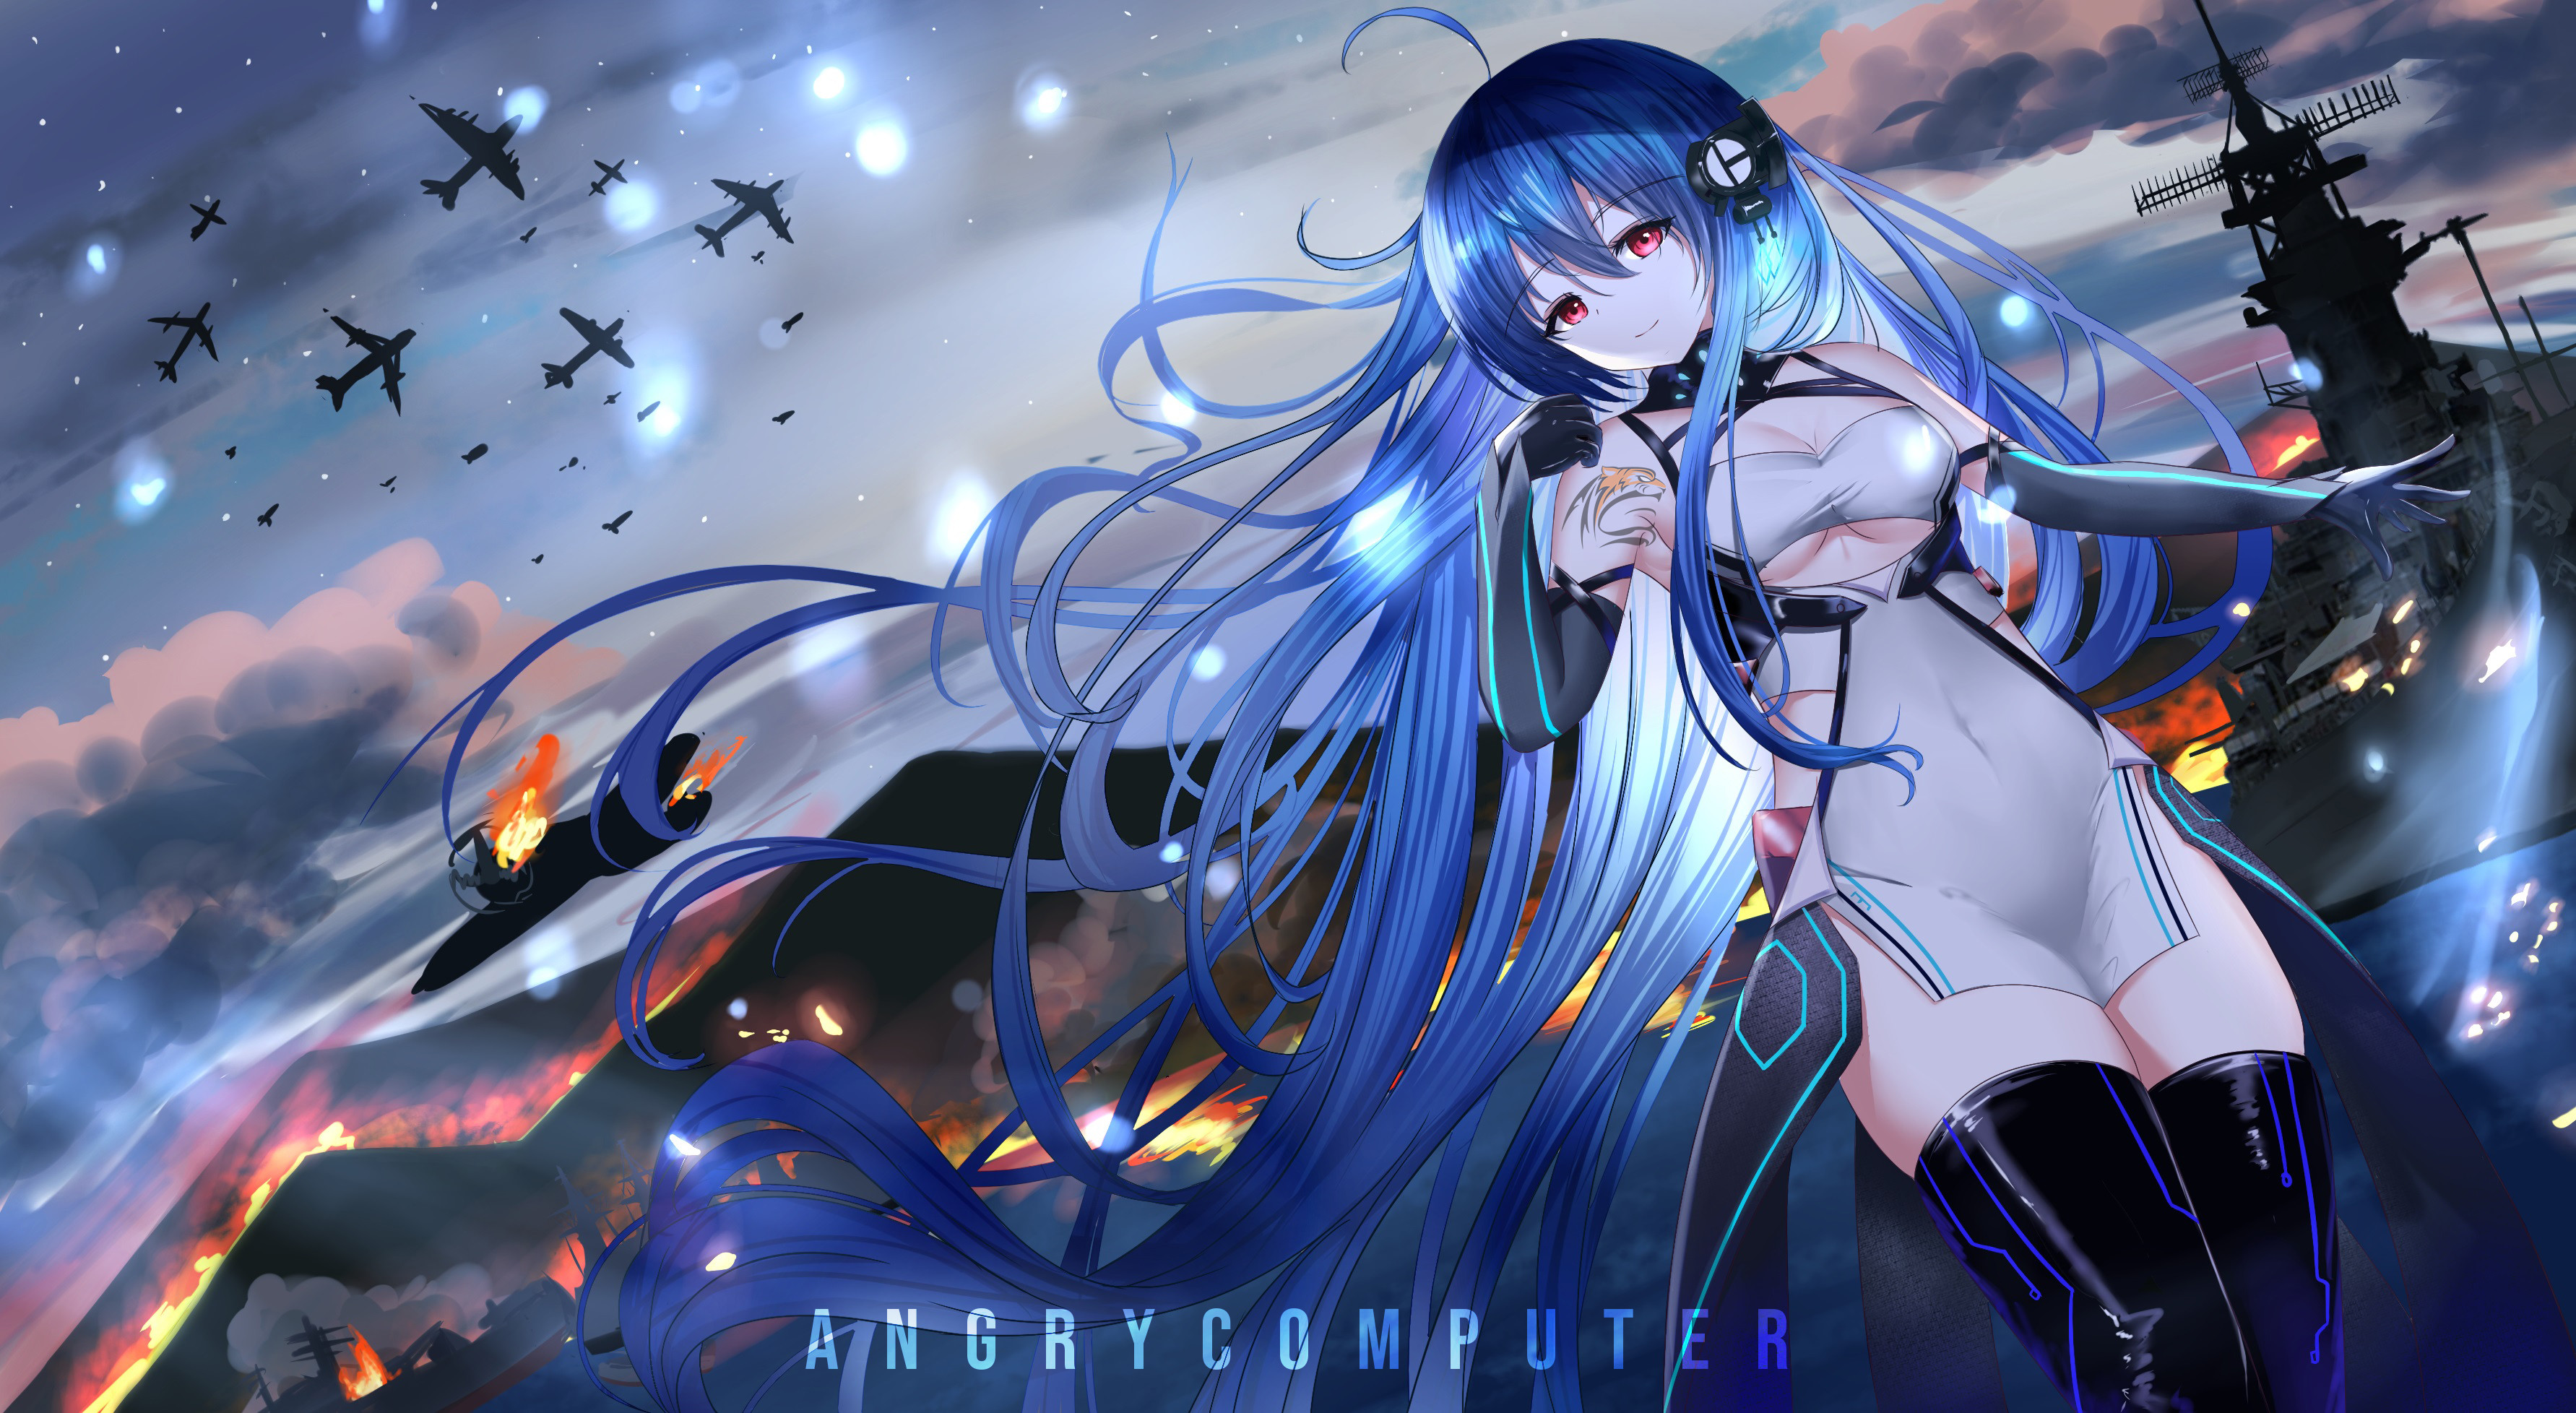 ArtStation - Blue hair anime girl